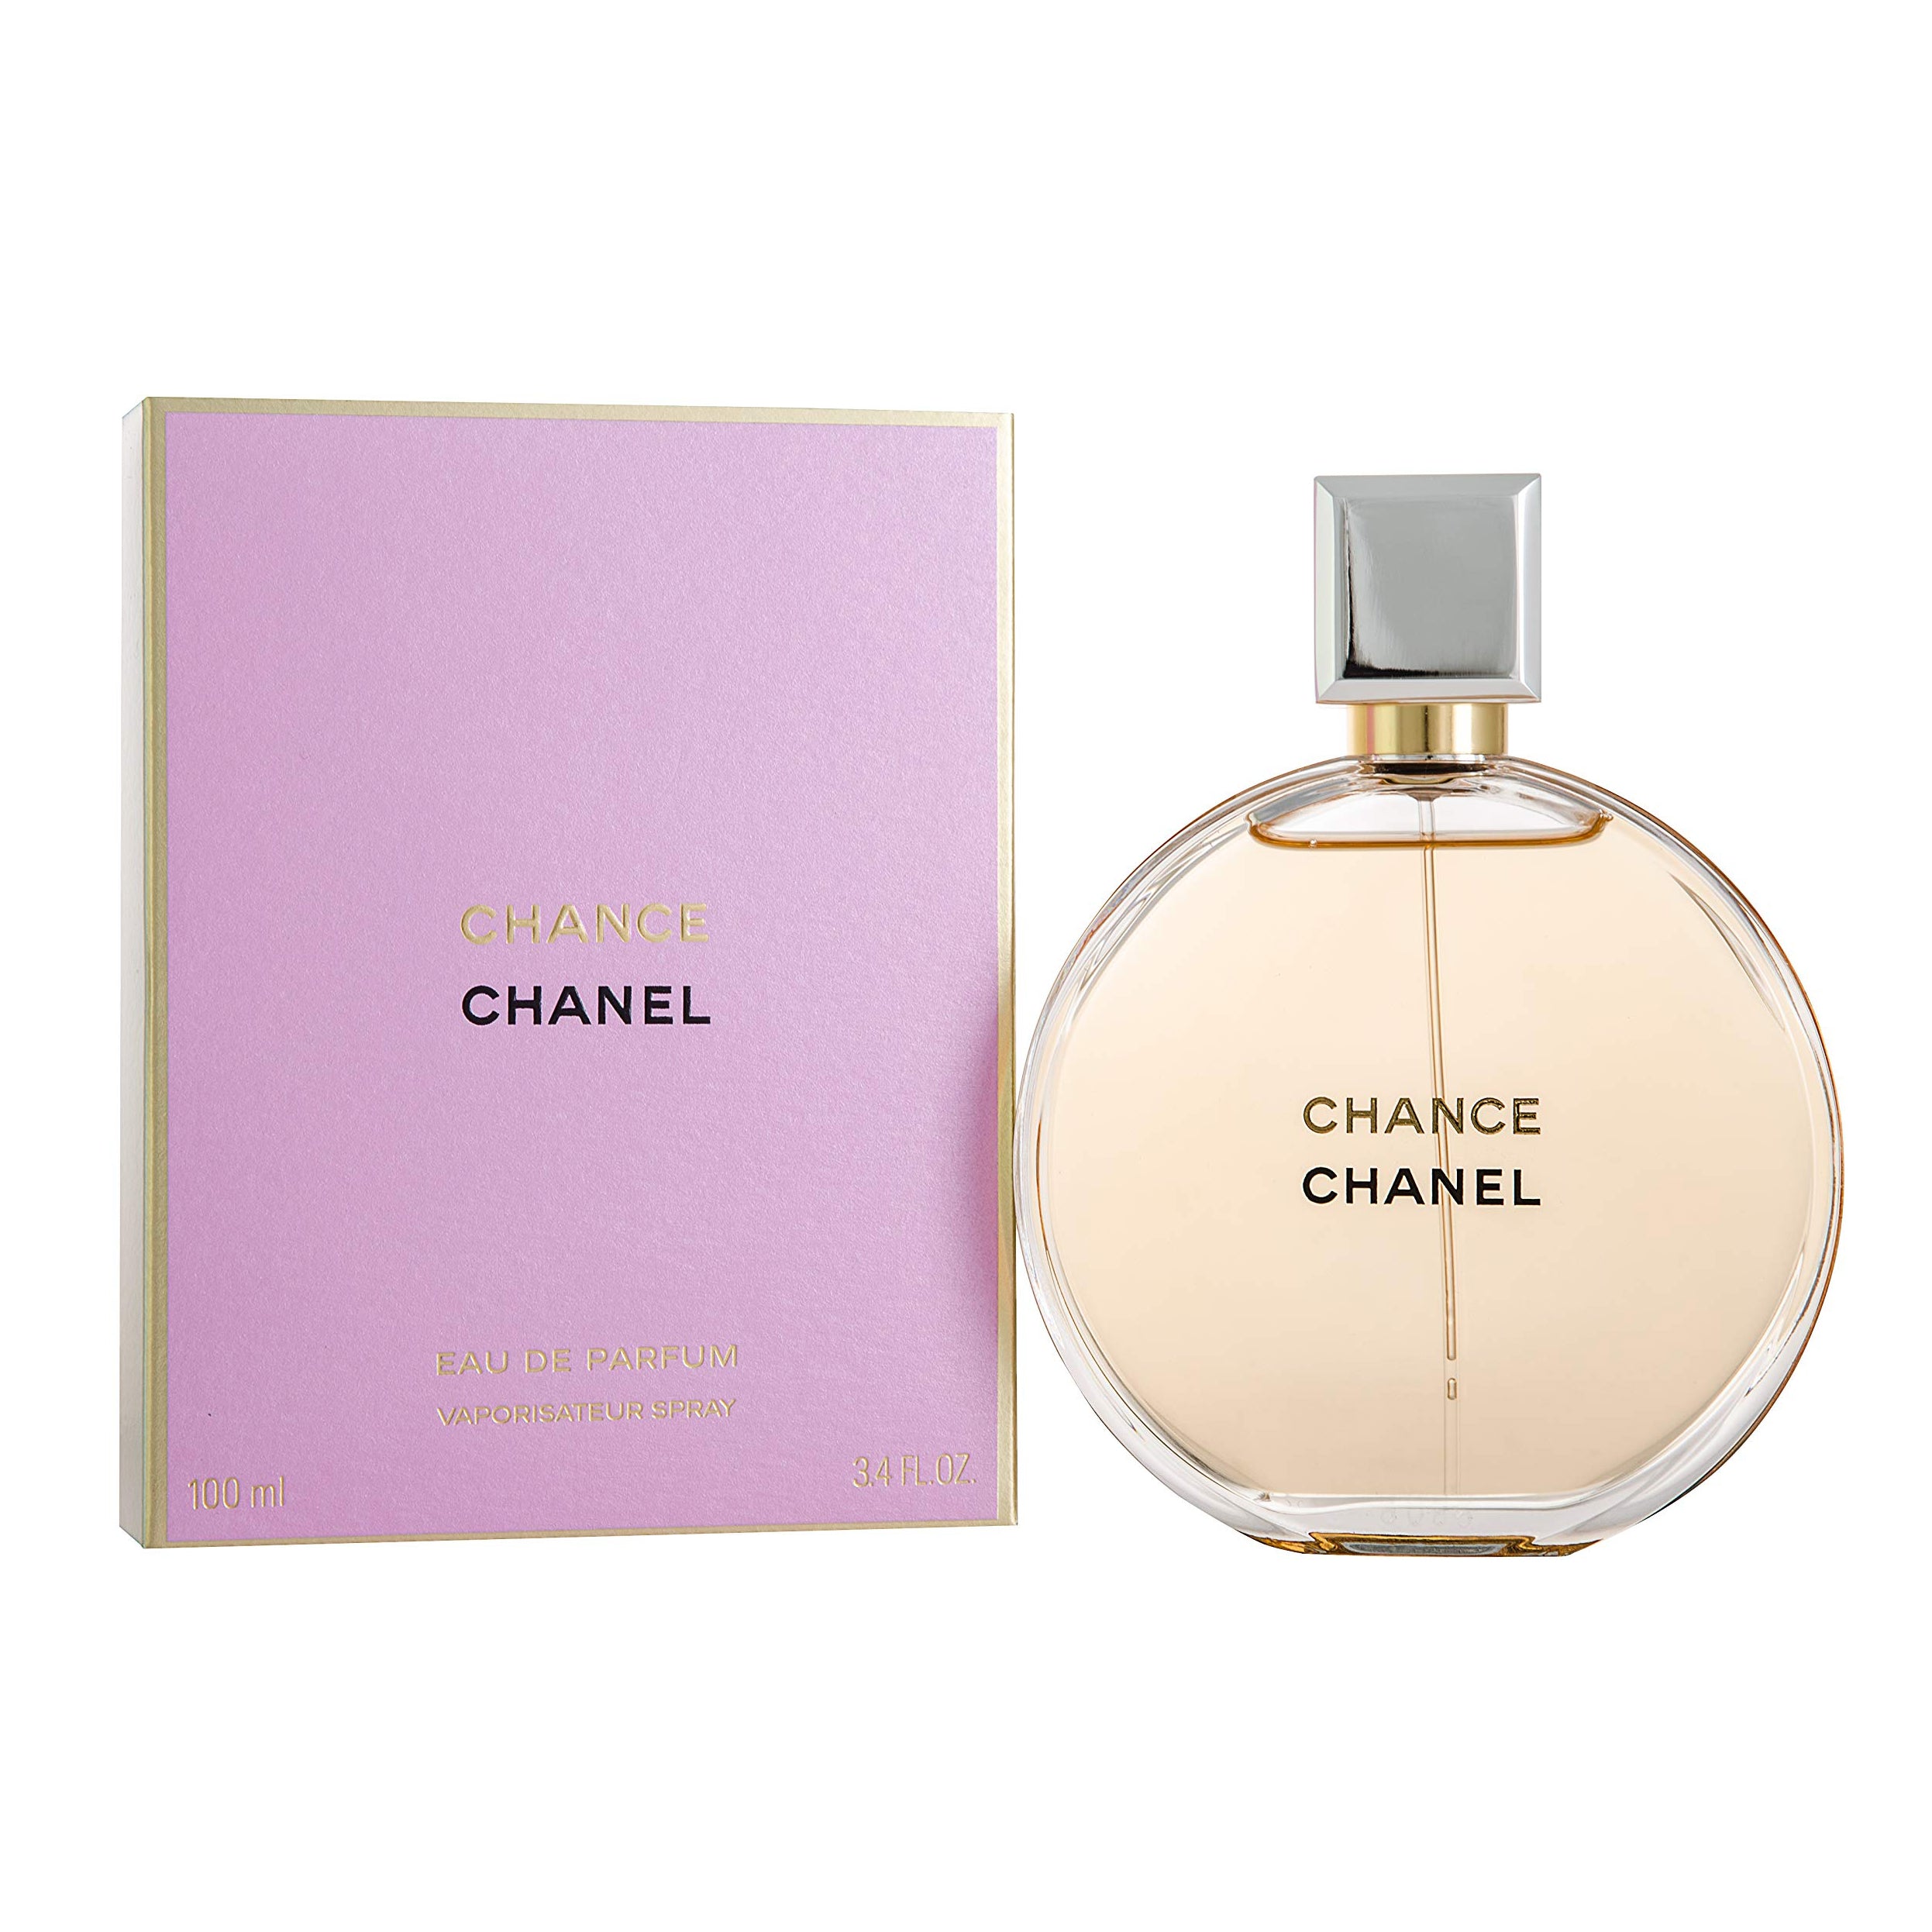 Chanel Chance for Women - Eau de Parfum, 100 ml - samawa perfumes 